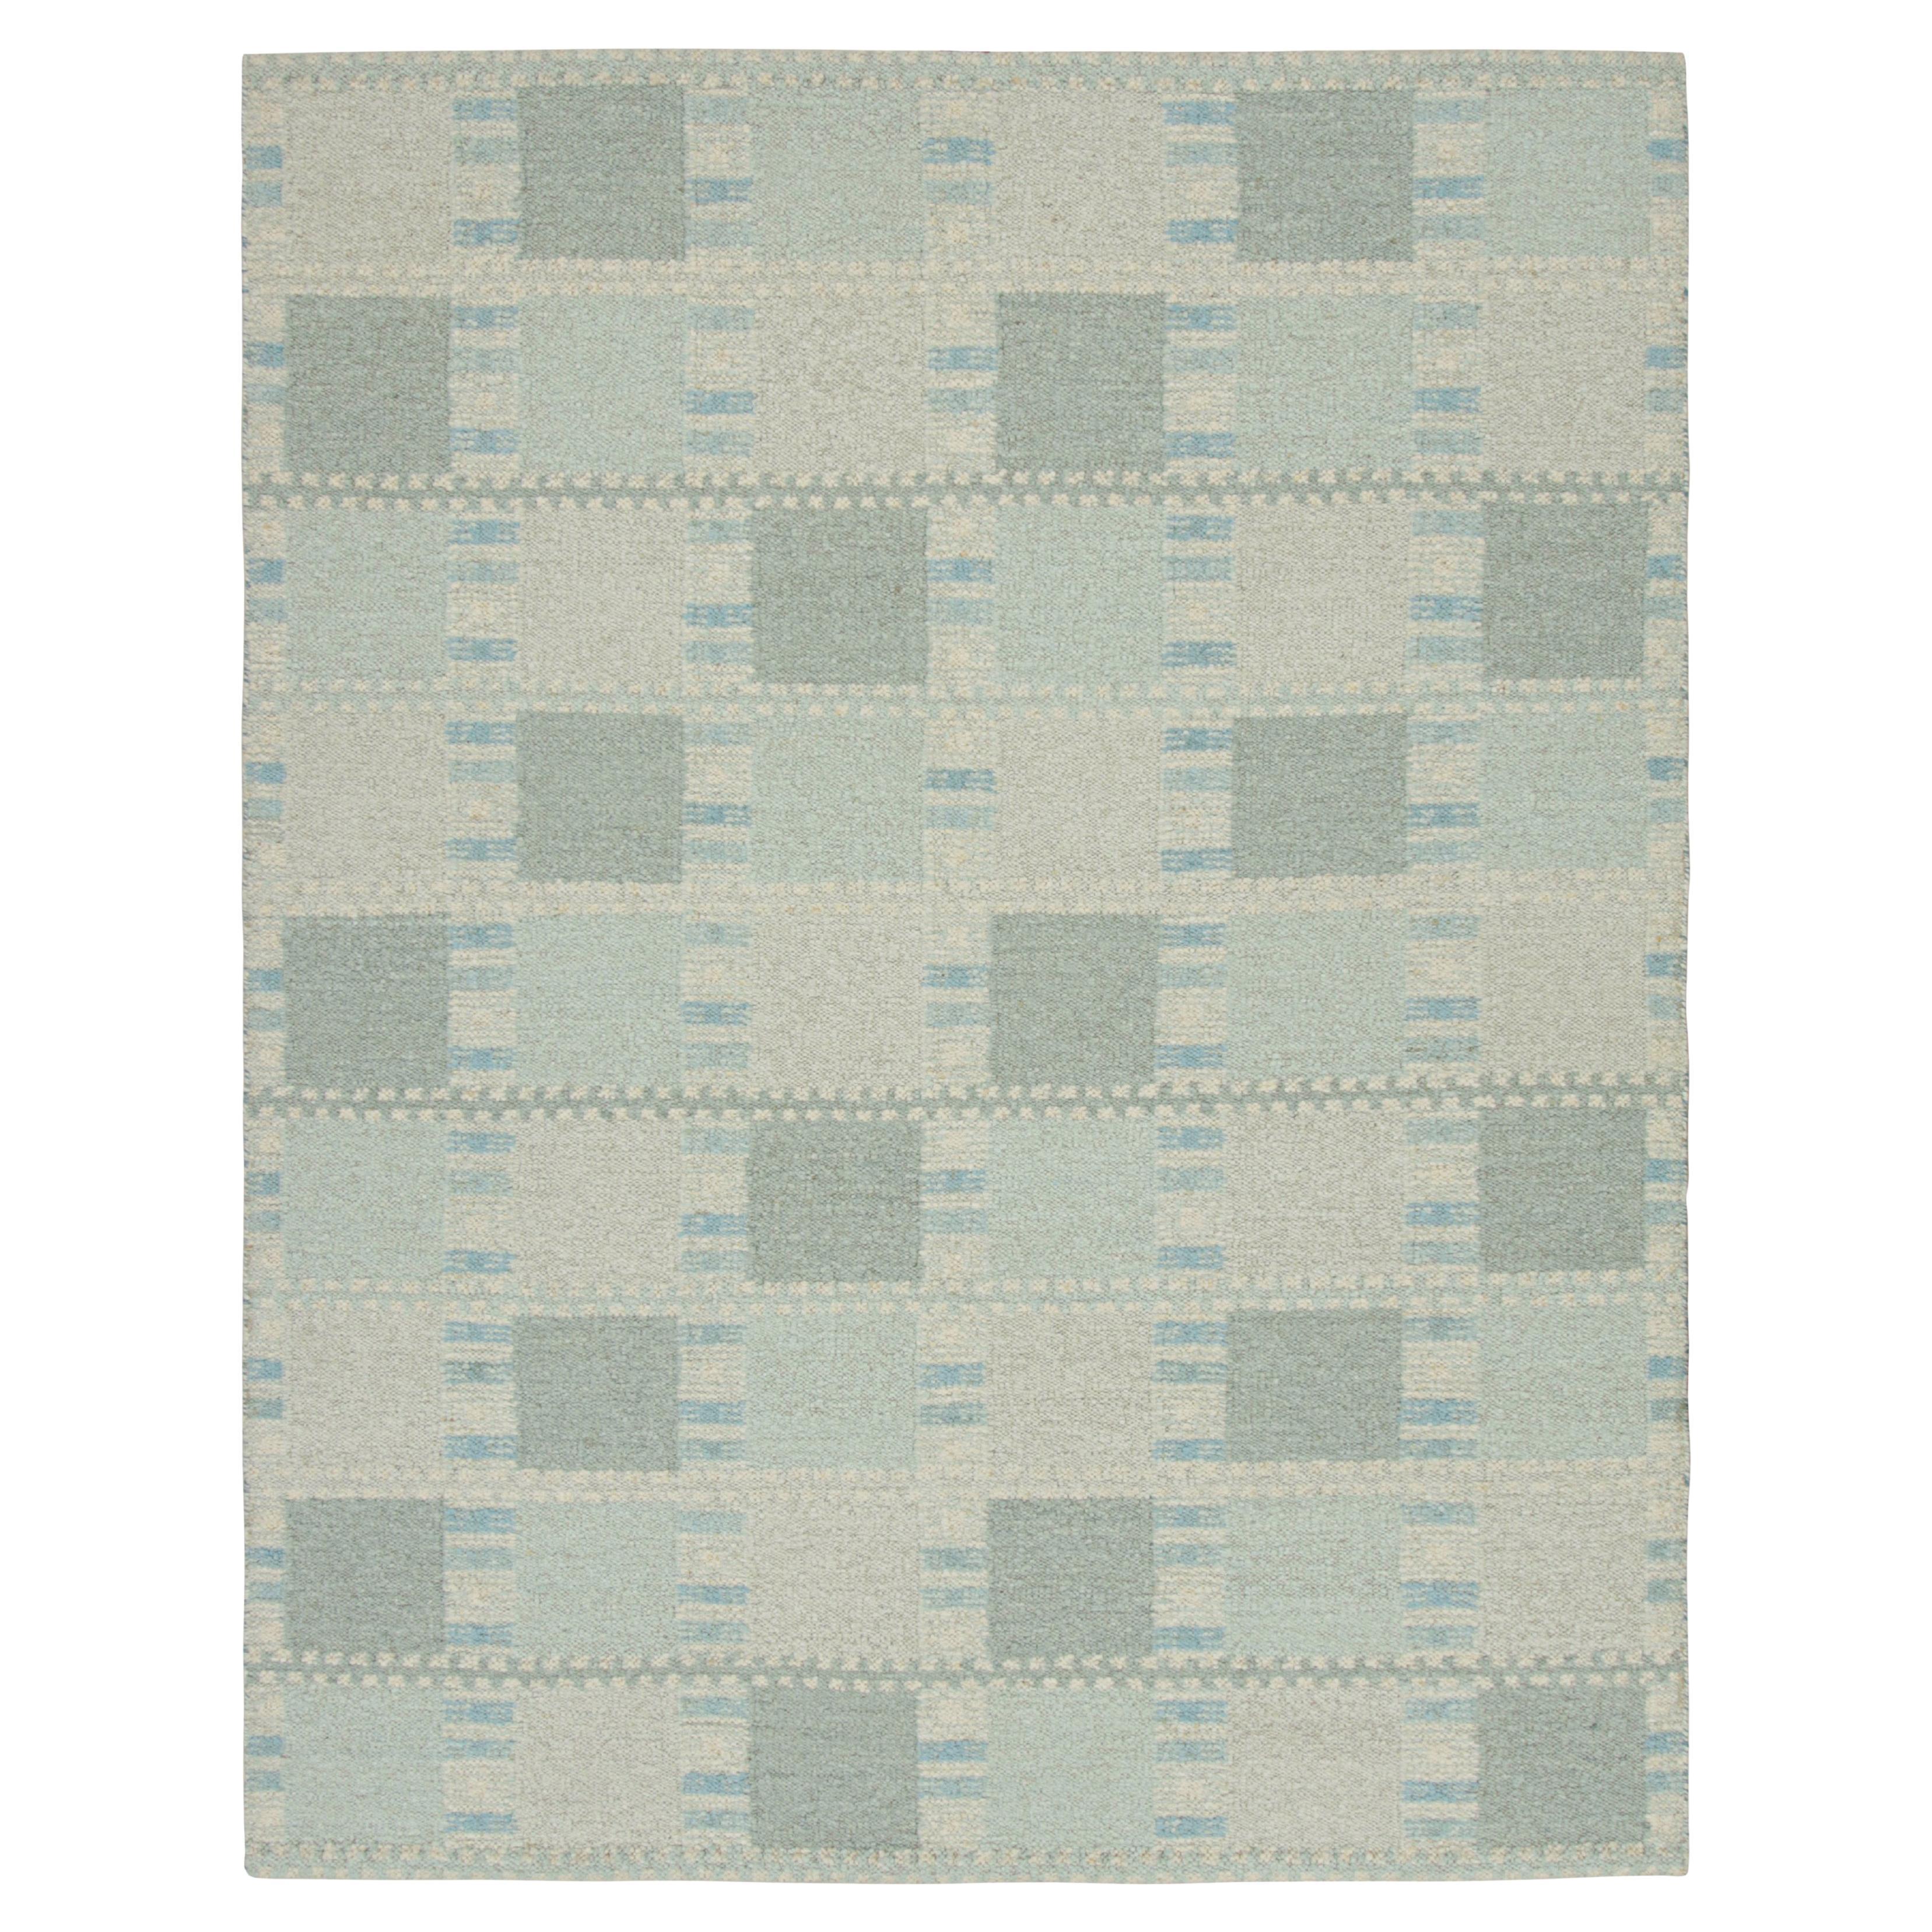 Tapis de style scandinave à motifs géométriques bleu clair de Rug & Kilim